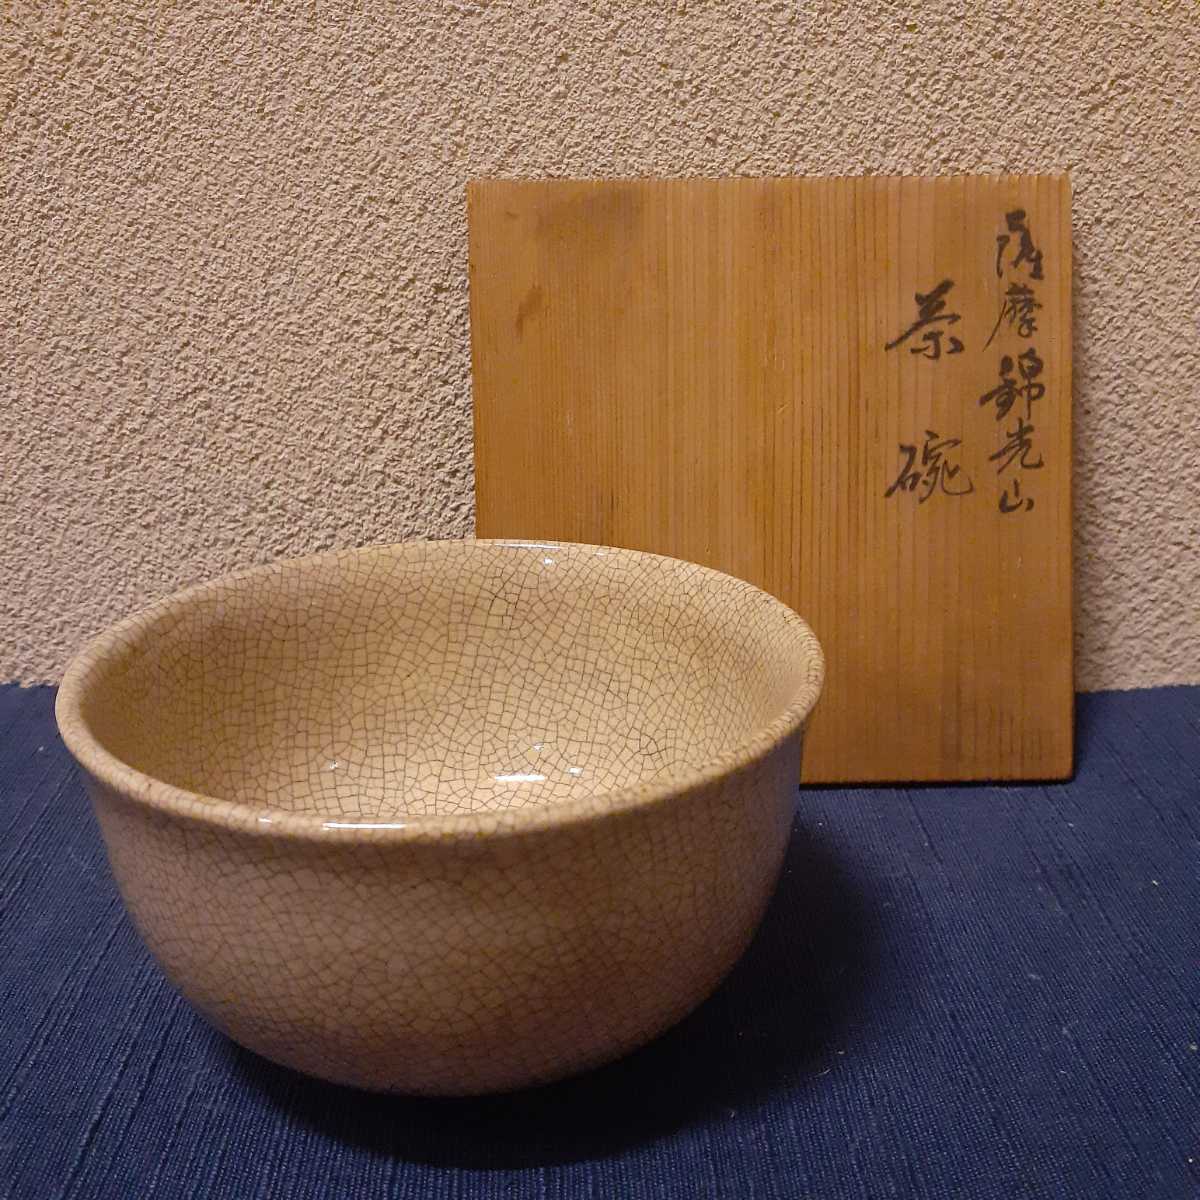 時代 錦光山 薩摩 茶碗 約12.5cm×6.5cm